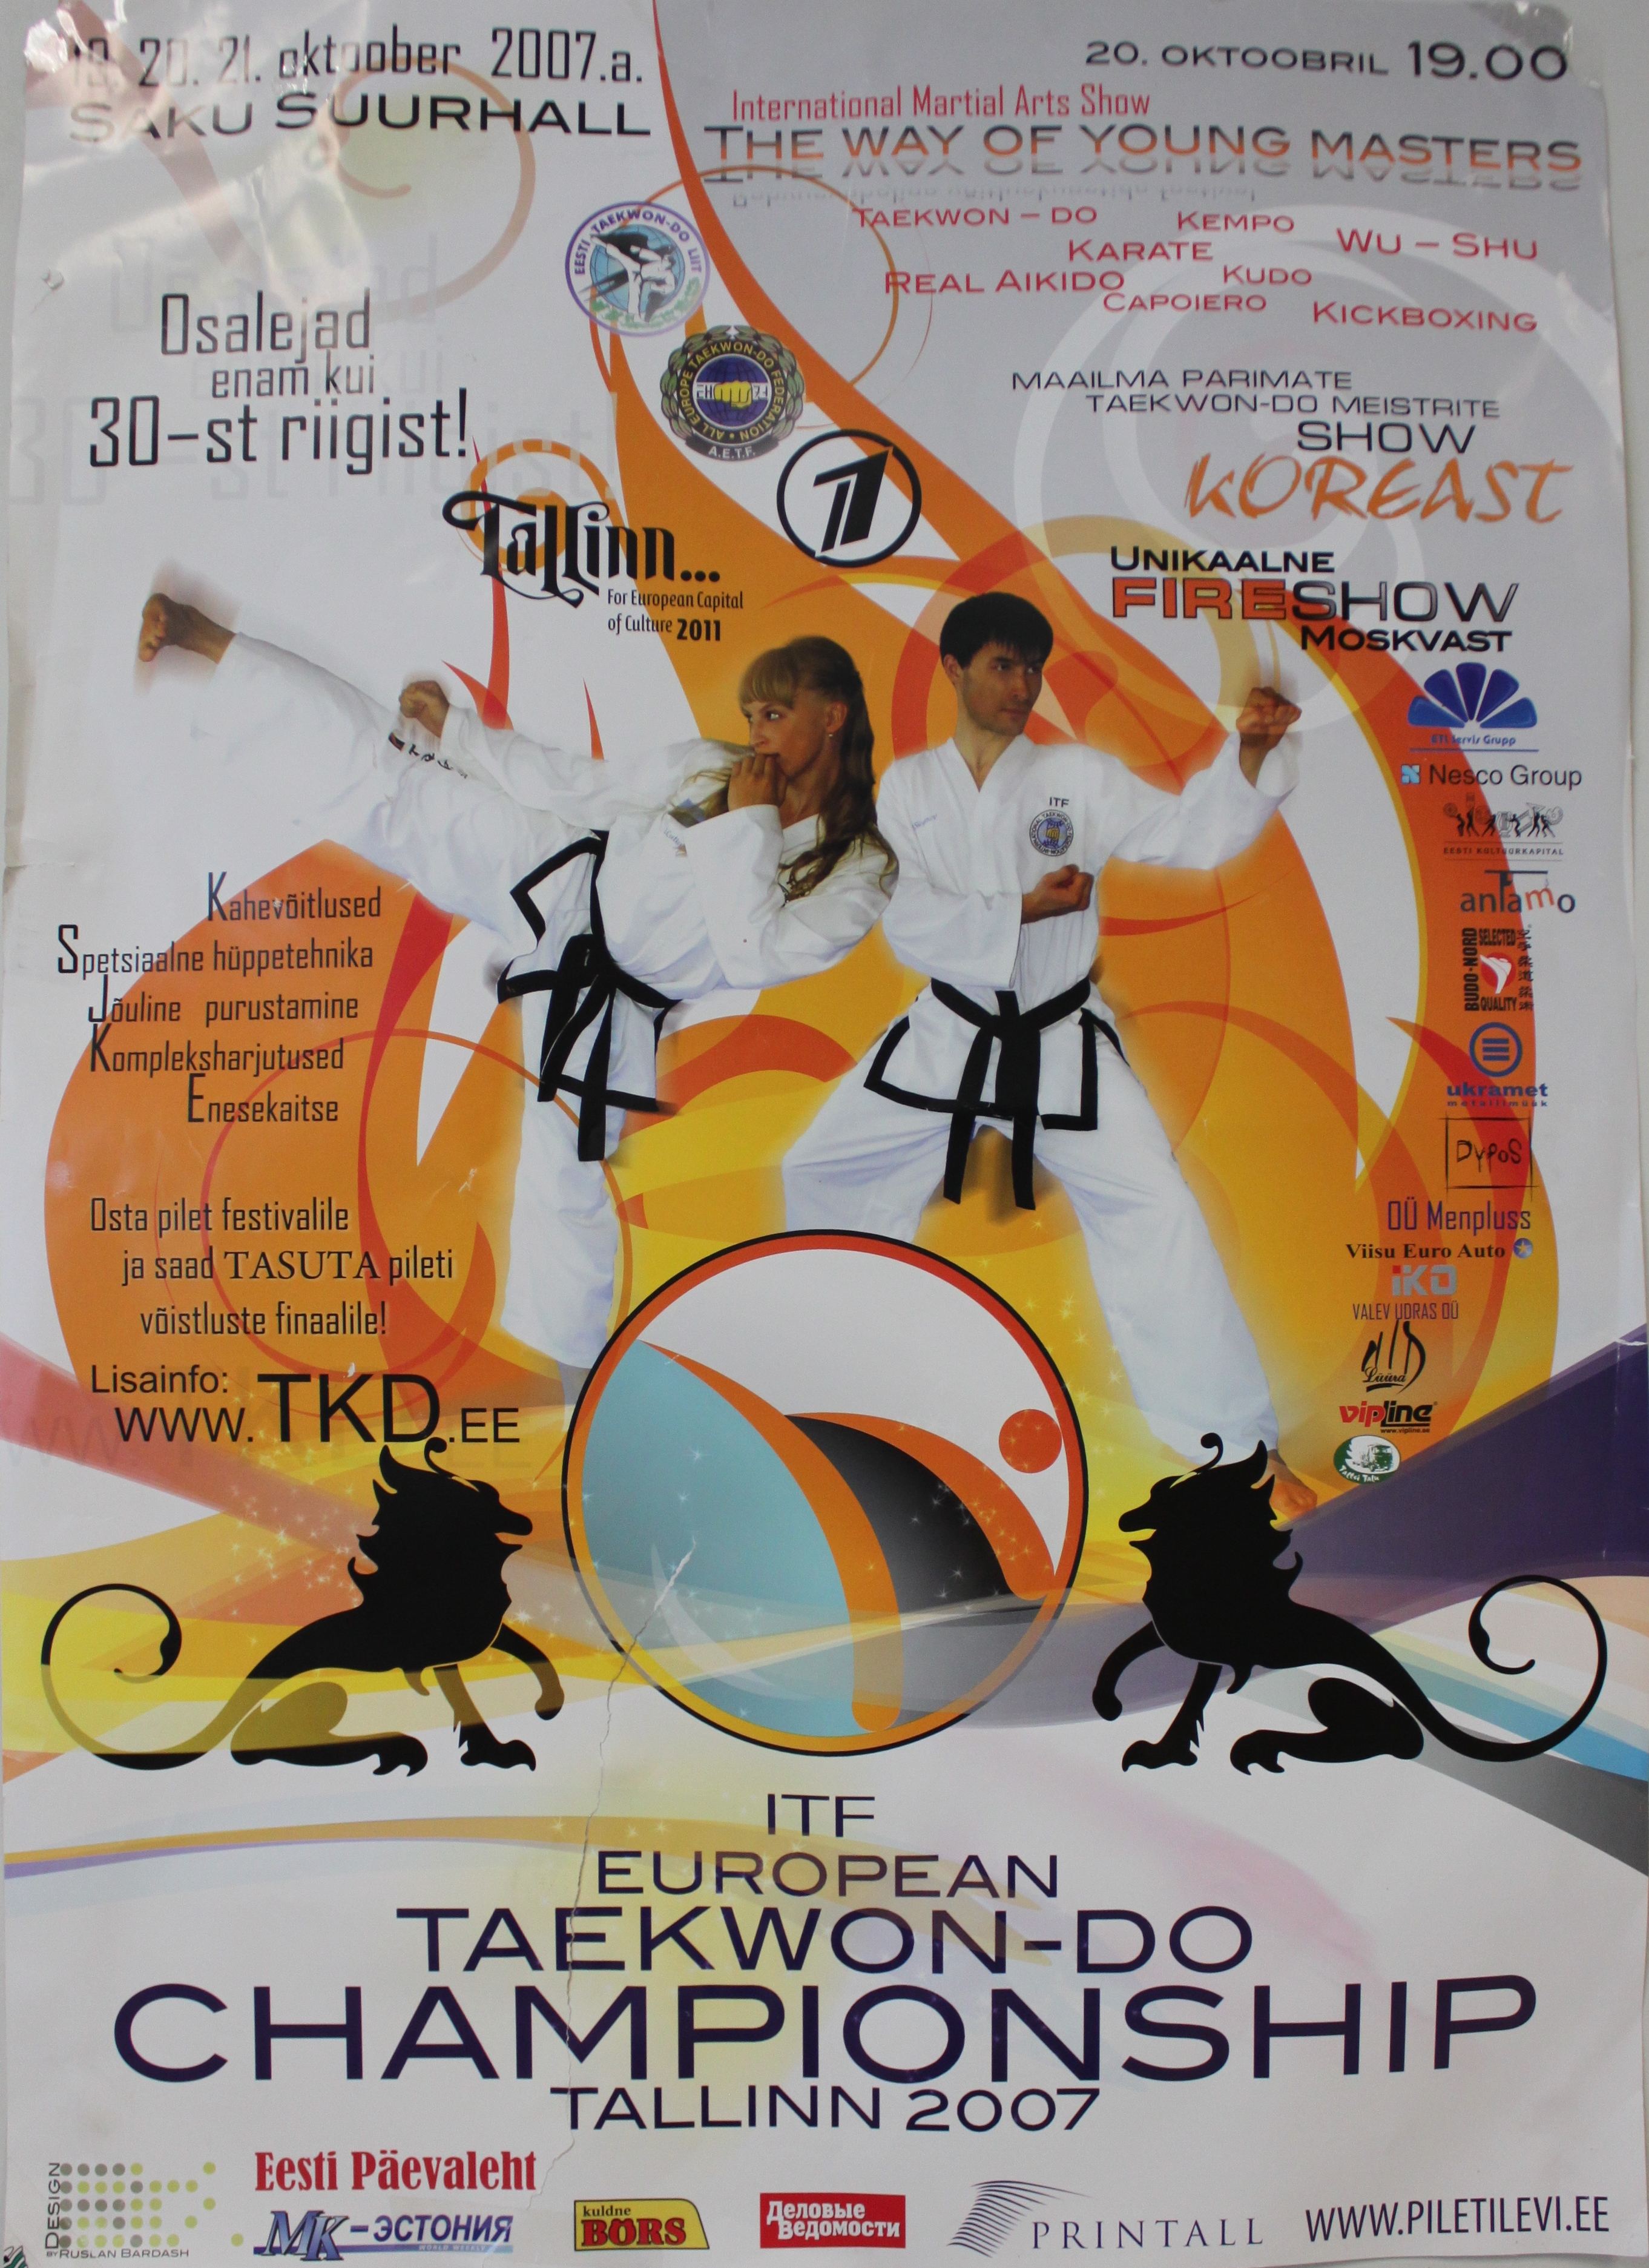 20. oktoobril 2007. aastal viidi festival läbi Taekwondo Euroopa Meistrivõistluste (ITF) raames Saku Suurhallis. Mõlemad üritused olid ühendatud üheks ainulaadseks sündmuseks, millest võttis osa ca 1000 inimest. Taekwondo meistrite demonstratsioonesinemised (s.h. spetsiaalselt selle eesmärgiga Tallinnasse saabunud Korea meistrid, kes tegid üle Eesti demonstratsioonesinemiste tuuri) ning teiste võitluskunstide spetsialistide esinemised ( Aikido, Kudo, Sport Chanbara, Kickboxing j.n.e.) olid programmi kõige vaatamisväärsem ja efektiivsemad osa. Ja Tuletsirkus Moskvast muutis ürituse piduliku avamise unustamatuks.